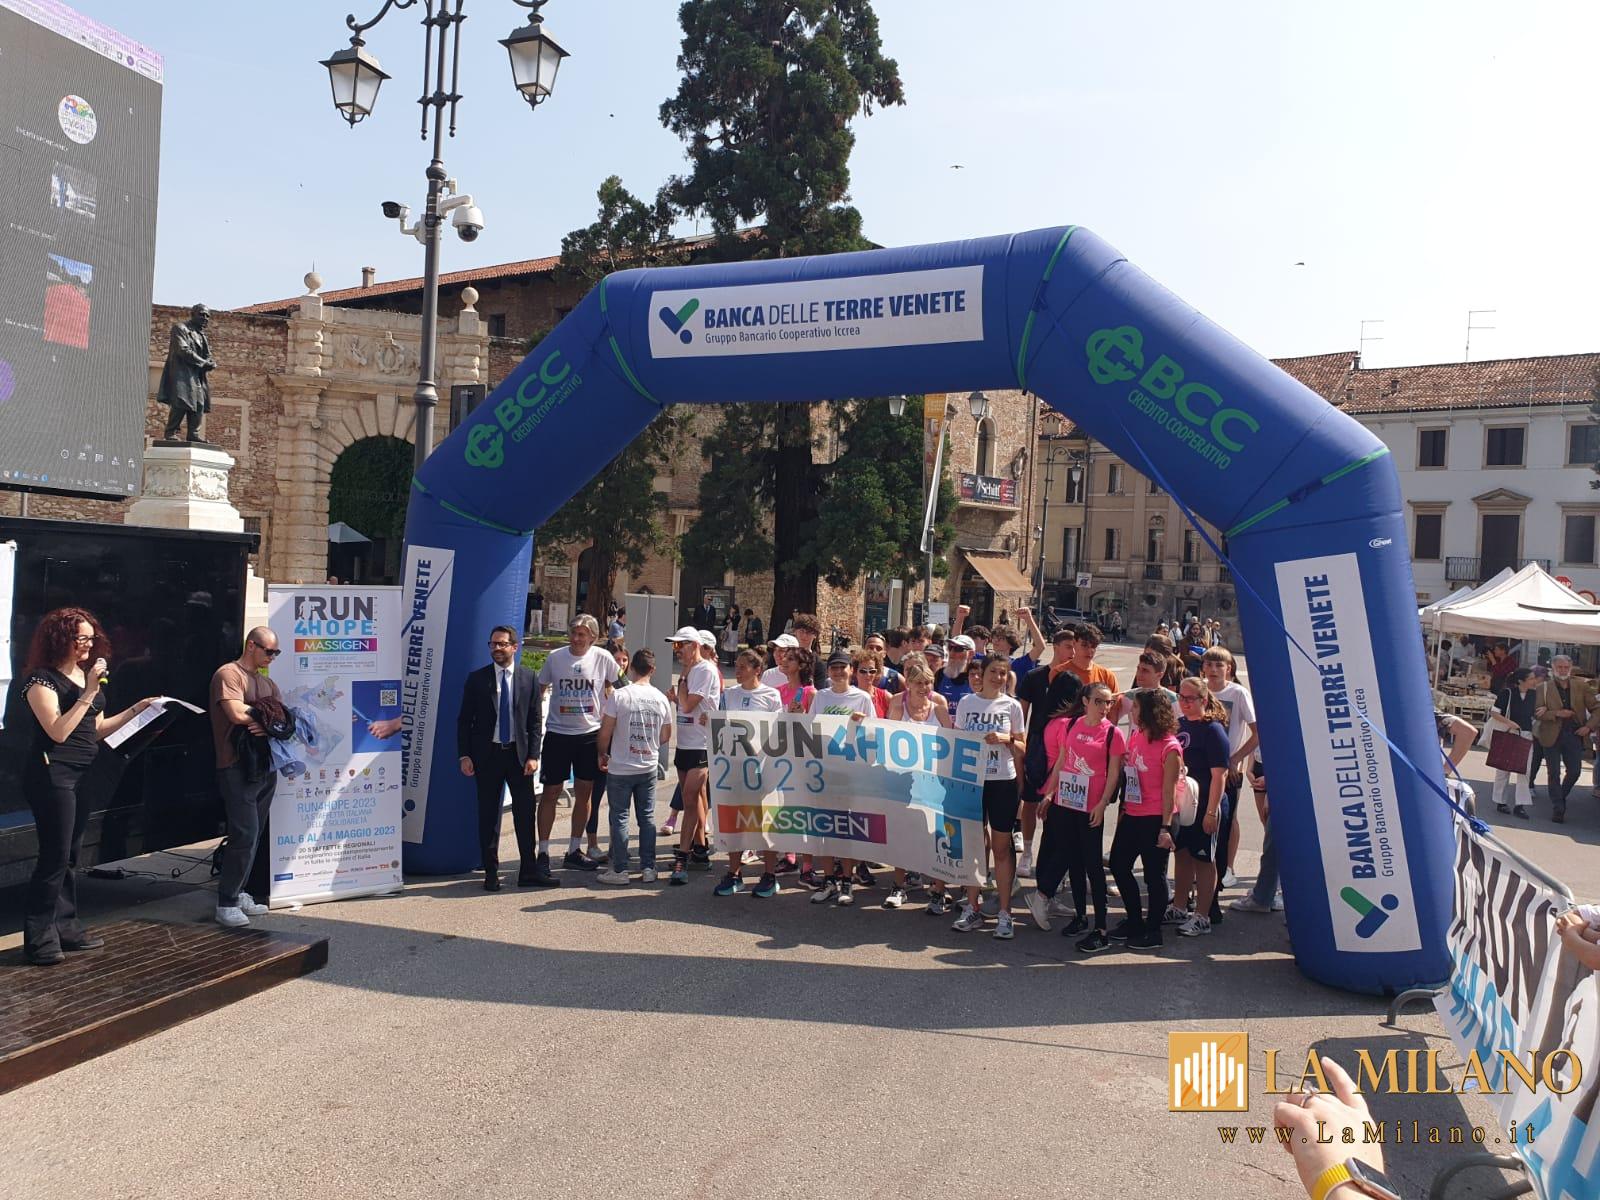 Run4Hope Massigen, la staffetta solidale partita da Vicenza: il ricavato sarà devoluto ad Ail a sostegno della ricerca e cura delle malattie ematologiche